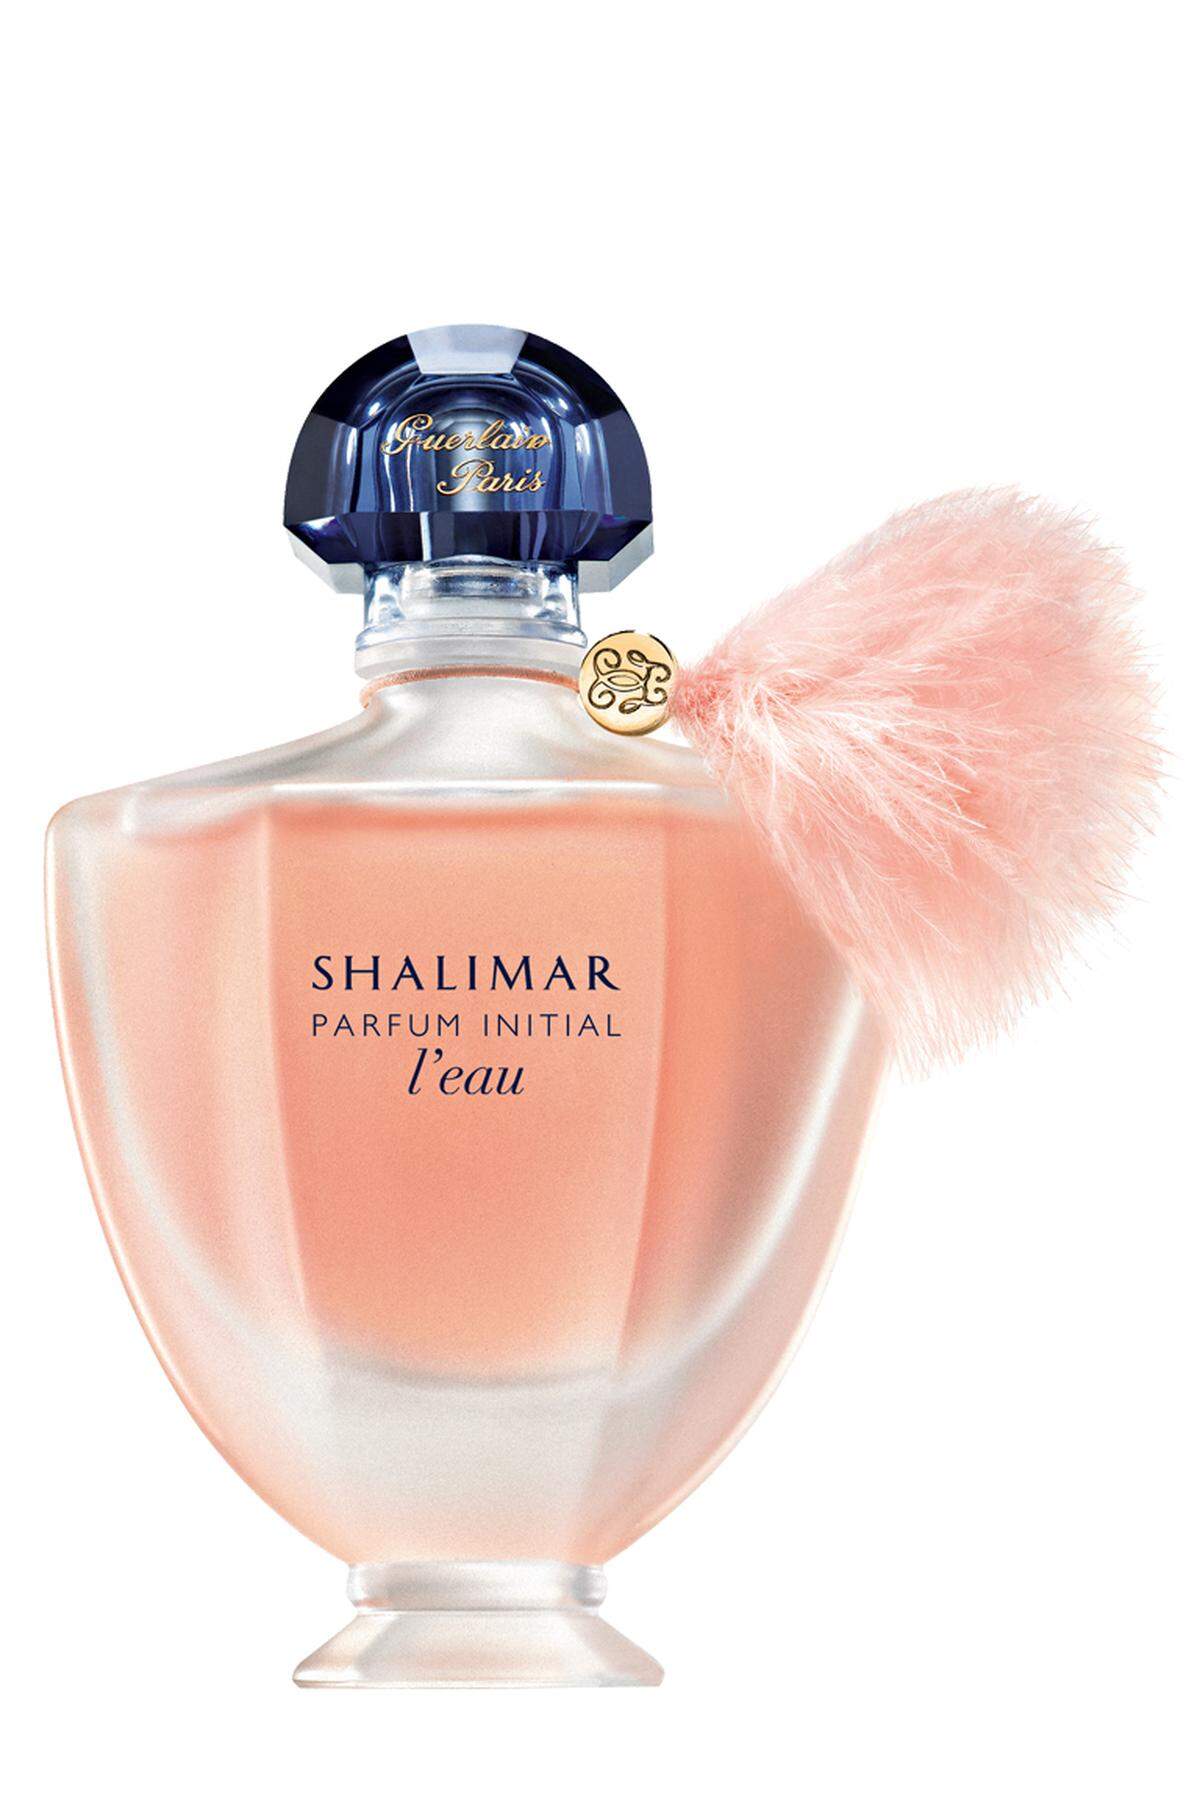 „Shalimar Parfum Initial“, Eau de Toilette, 60 ml um 68 Euro.